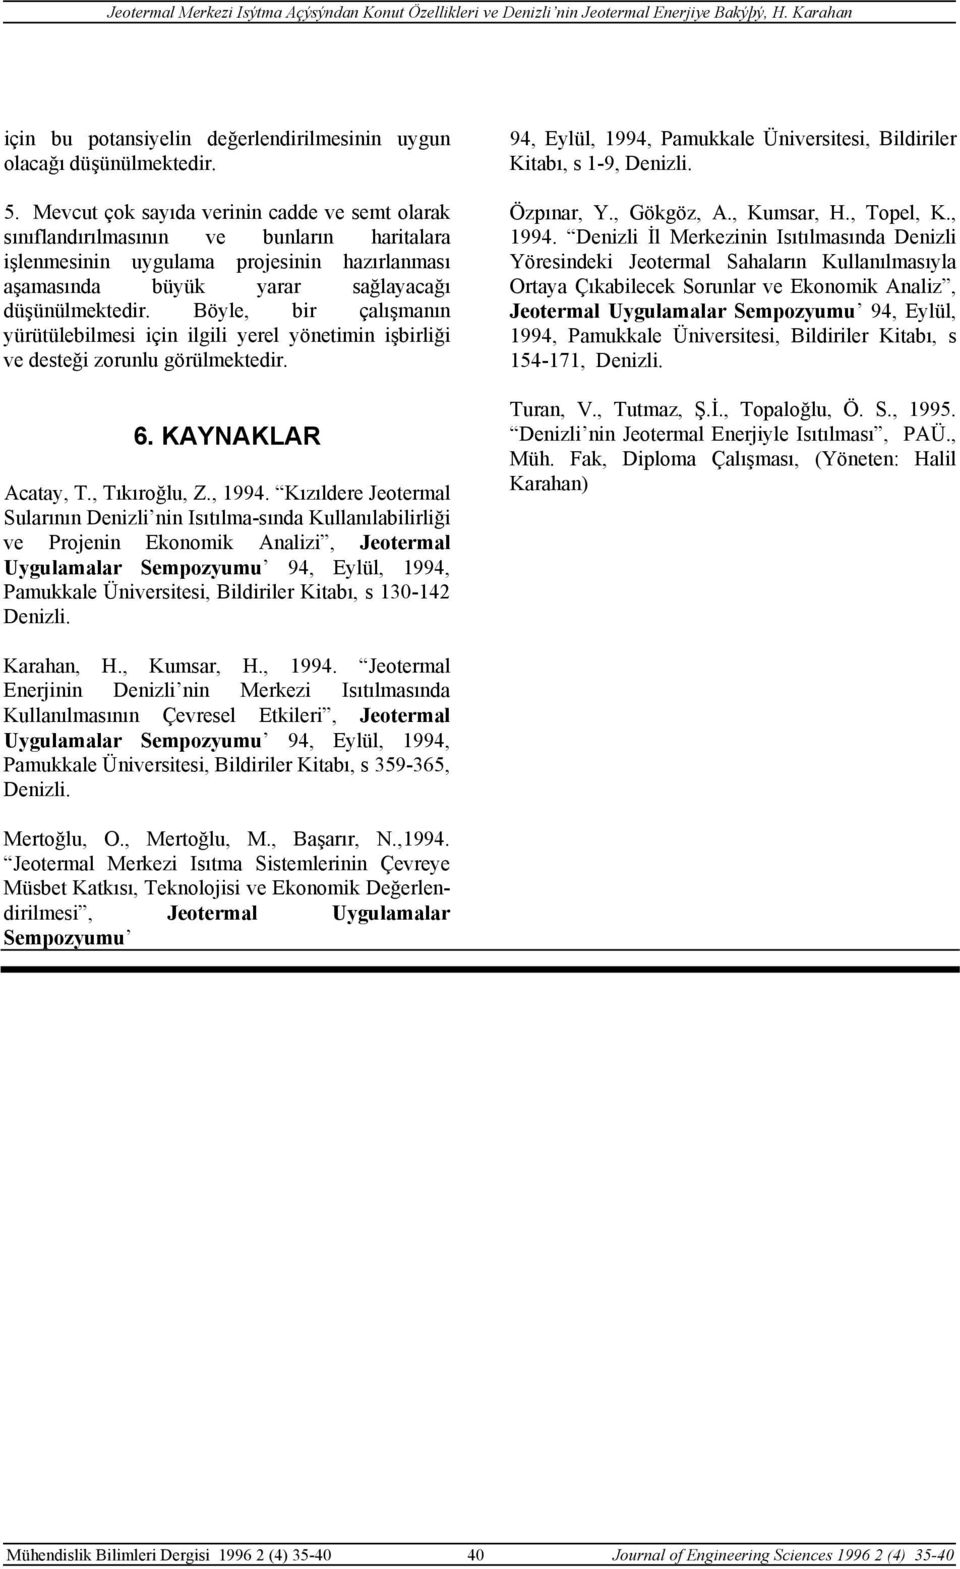 Böyle, bir çalışmanın yürütülebilmesi için ilgili yerel yönetimin işbirliği ve desteği zorunlu görülmektedir. 6. KAYNAKLAR Acatay, T., Tıkıroğlu, Z., 1994.